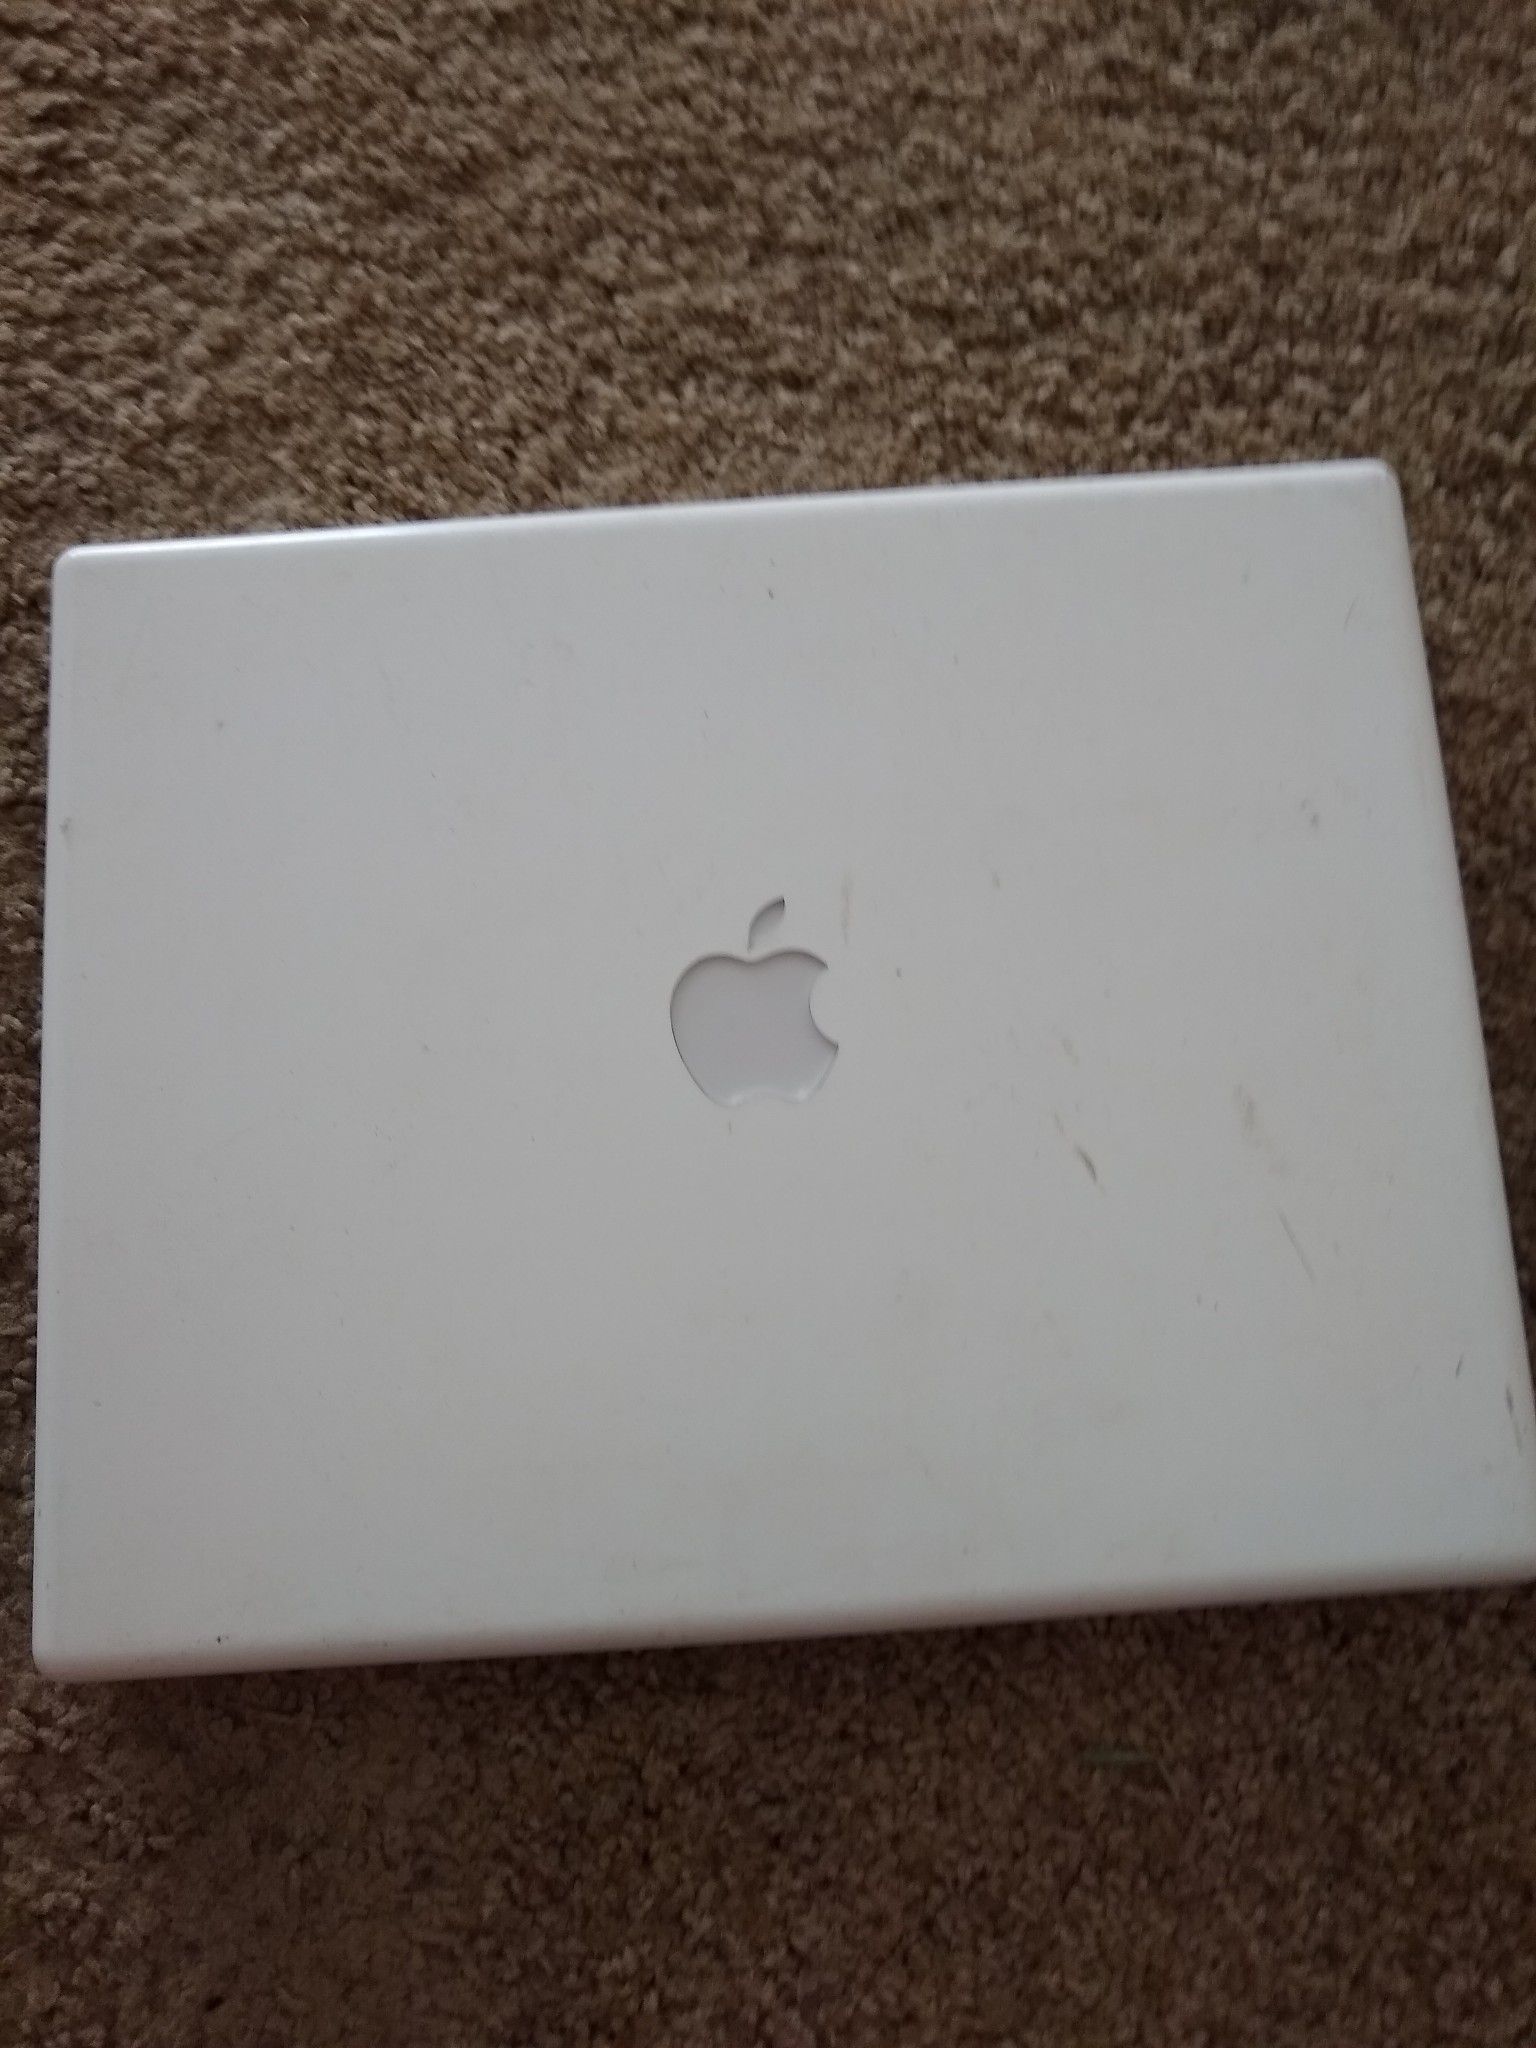 Apple iBook G4 for parts or repair